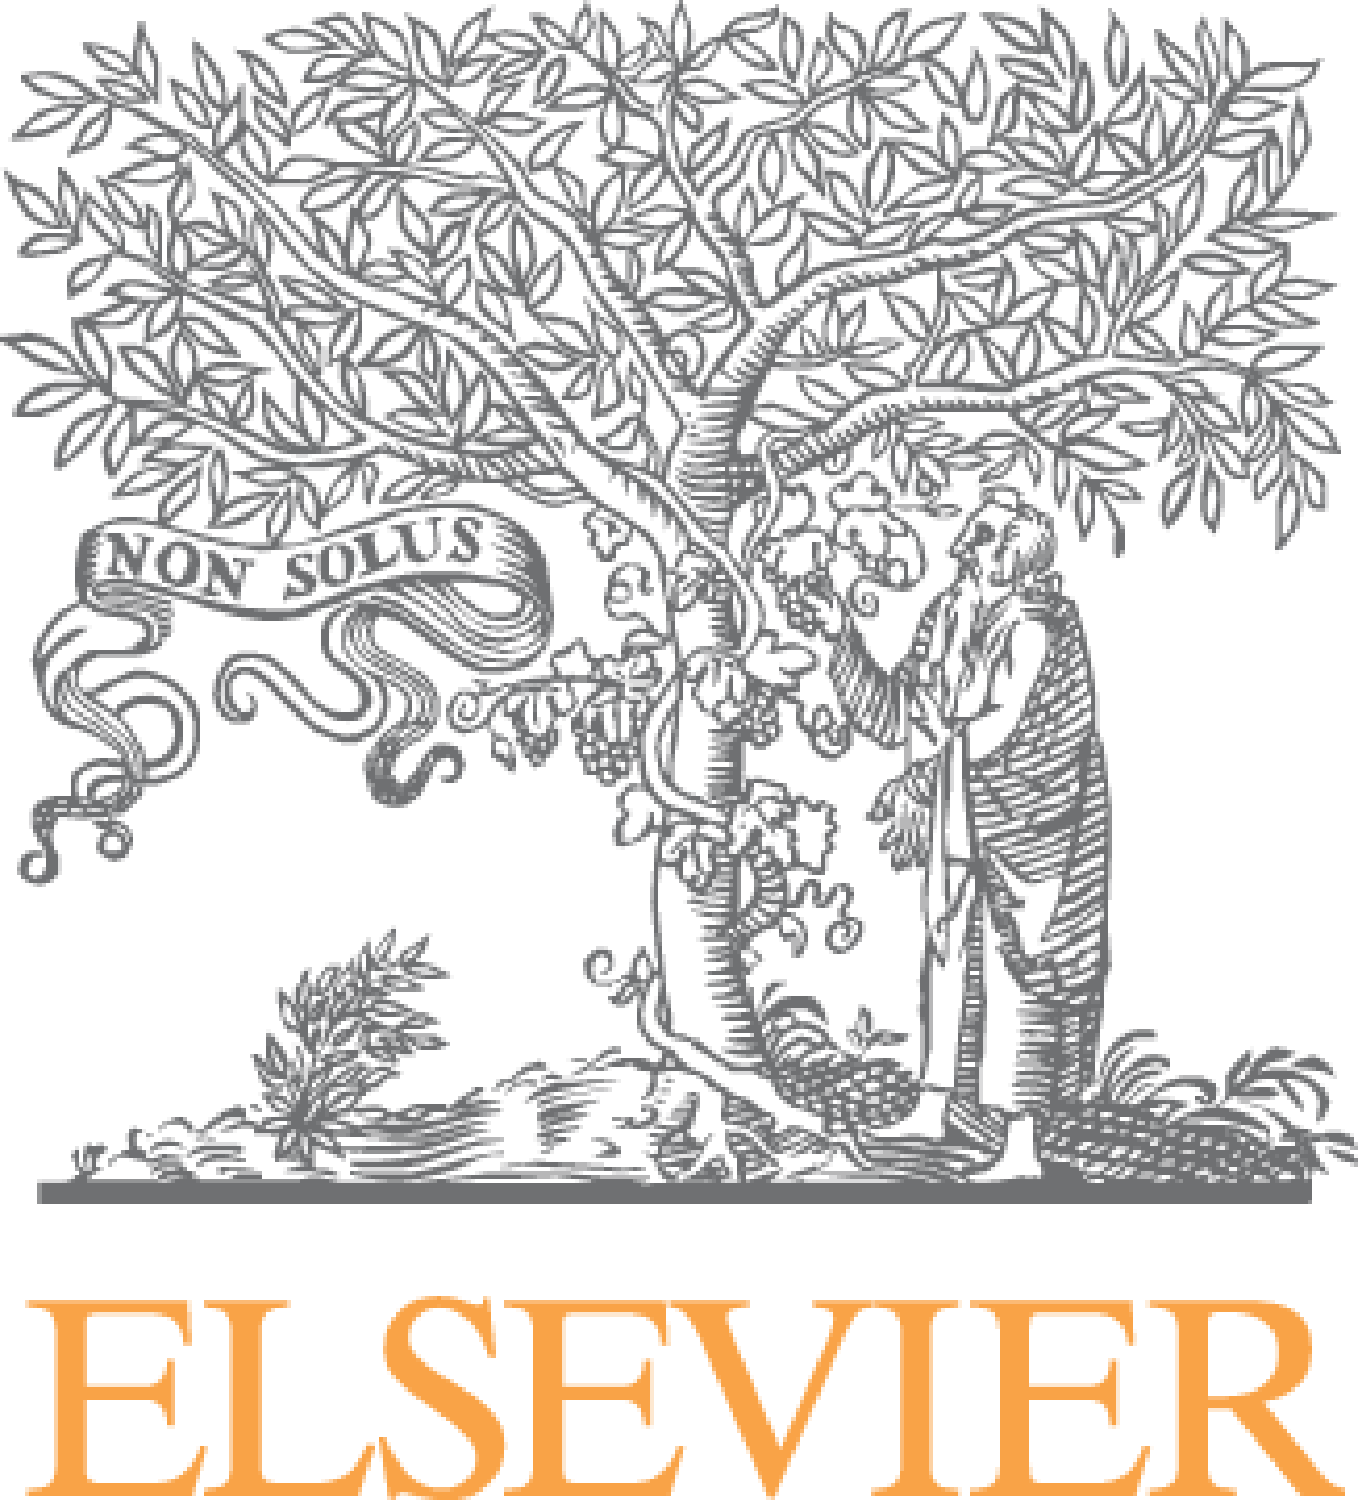 Elsevierlogo360 300dpi